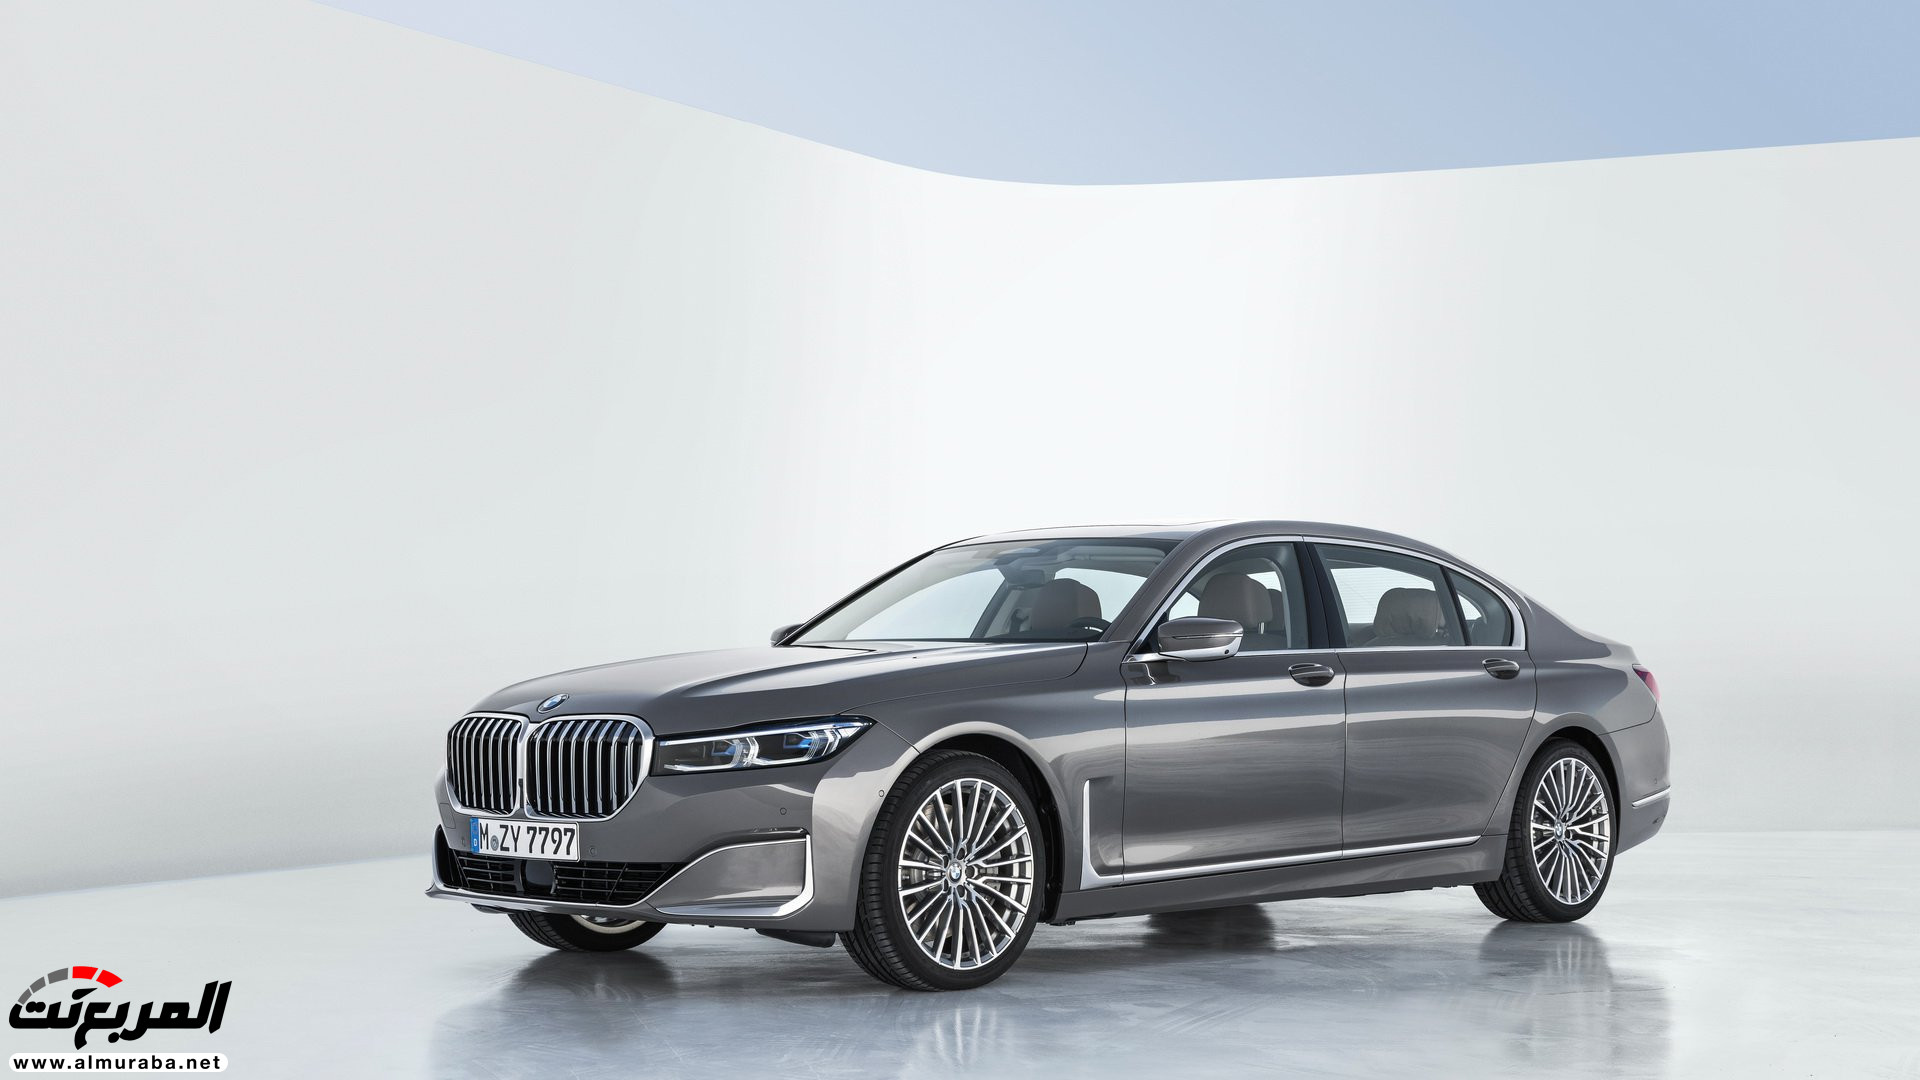 بي ام دبليو الفئة السابعة 2020 المحدثة تكشف نفسها رسمياً "صور ومواصفات" BMW 7 Series 82